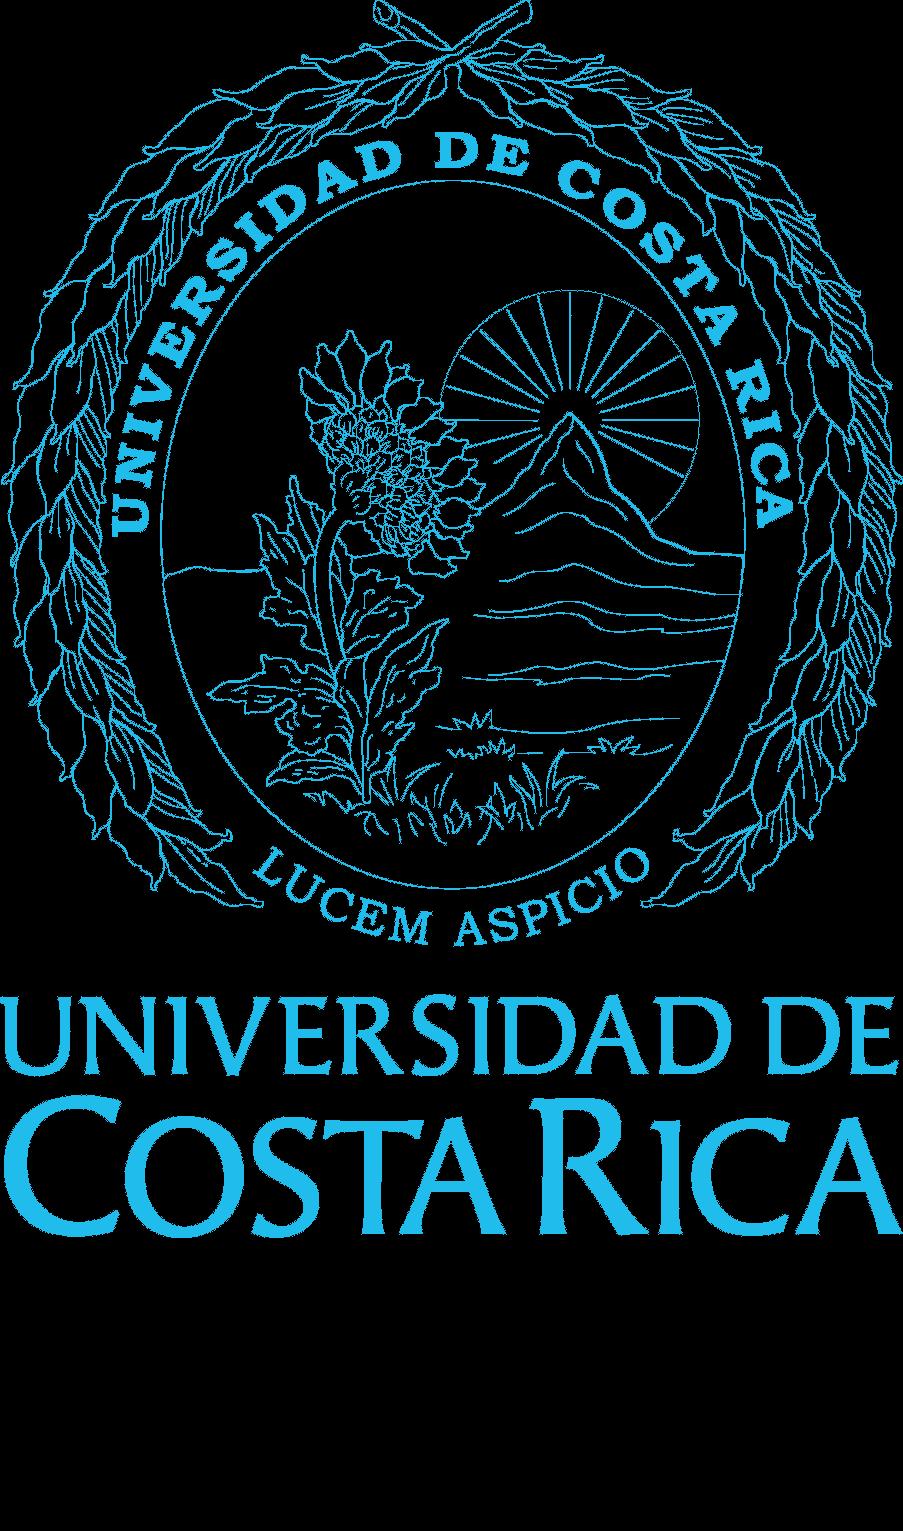 Universidad de Costa Rica Facultad de Ciencias Escuela de Física Carta al estudiante Curso: Física General para Físicos III (FS0427) Ciclo: I-2018 Créditos: 3 - Horas semanales: 4 Requisitos: Cálculo